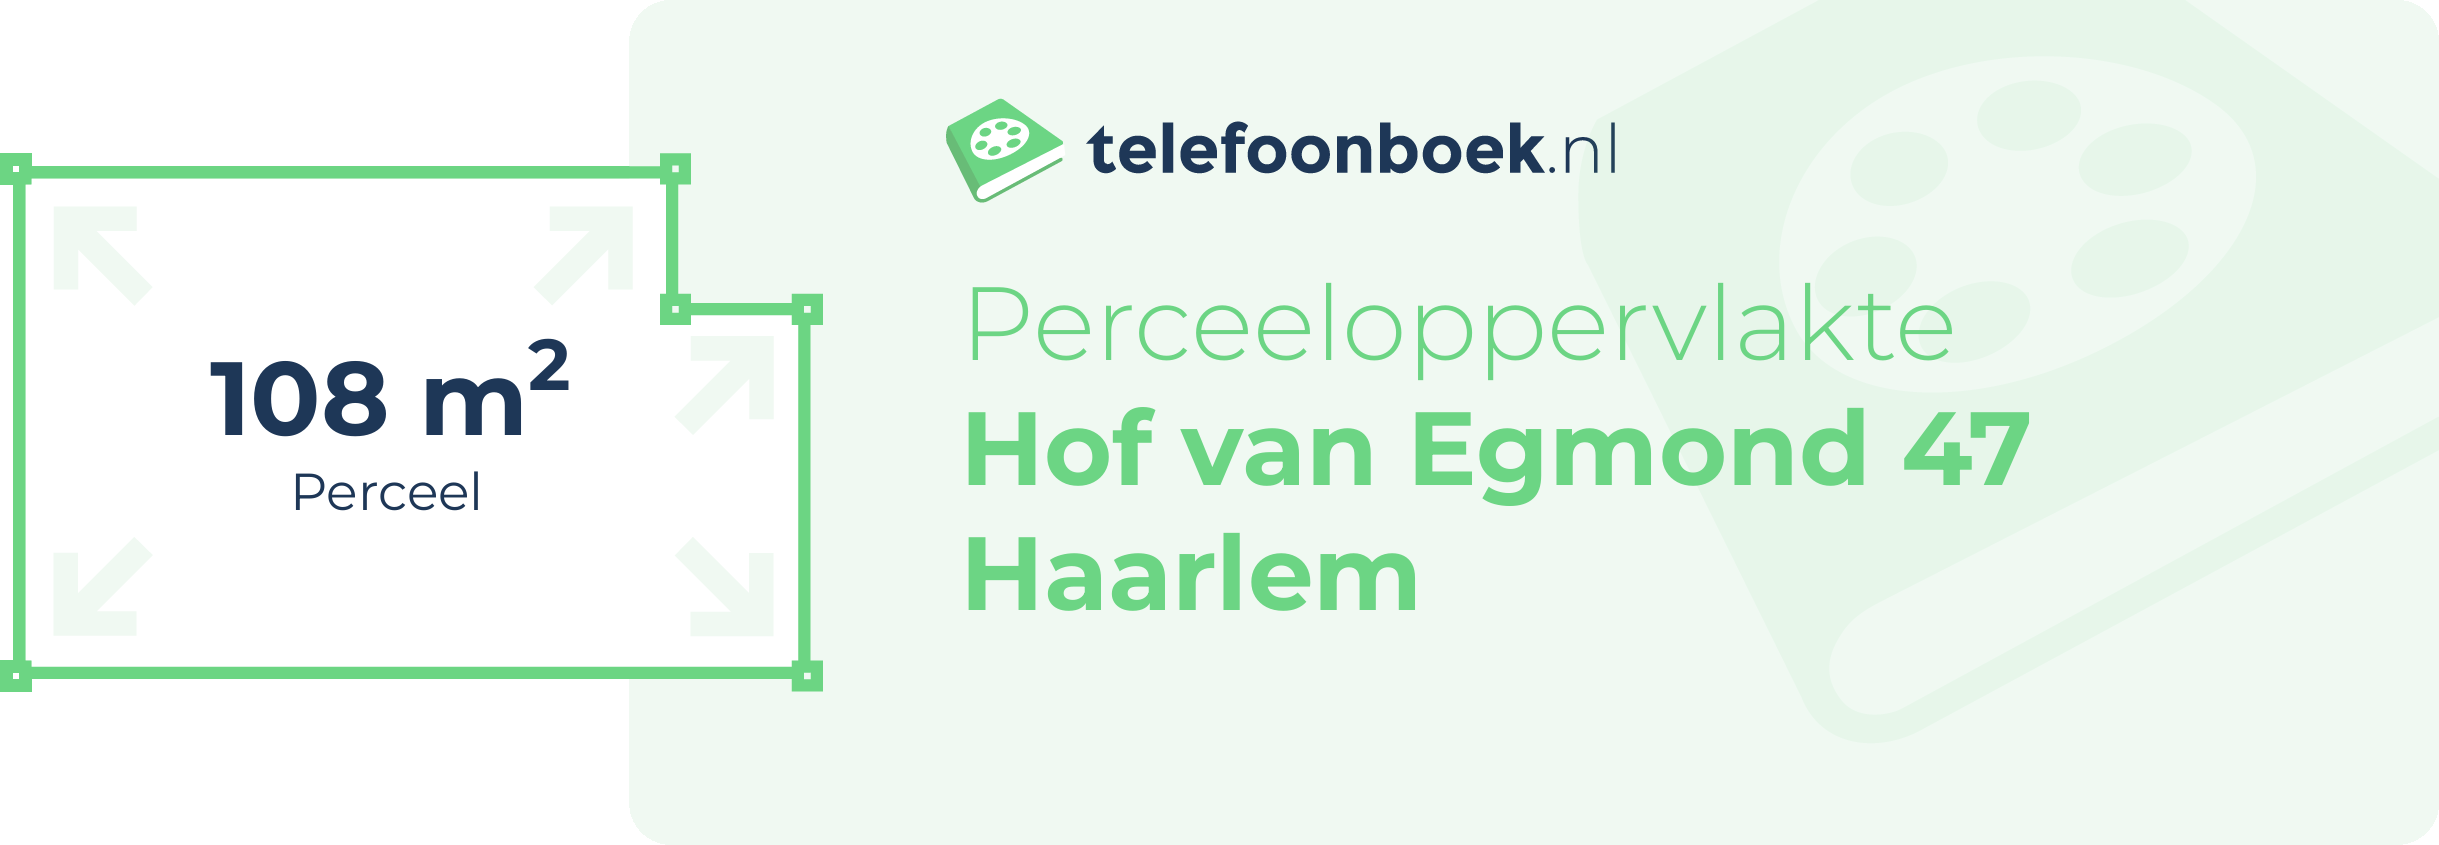 Perceeloppervlakte Hof Van Egmond 47 Haarlem